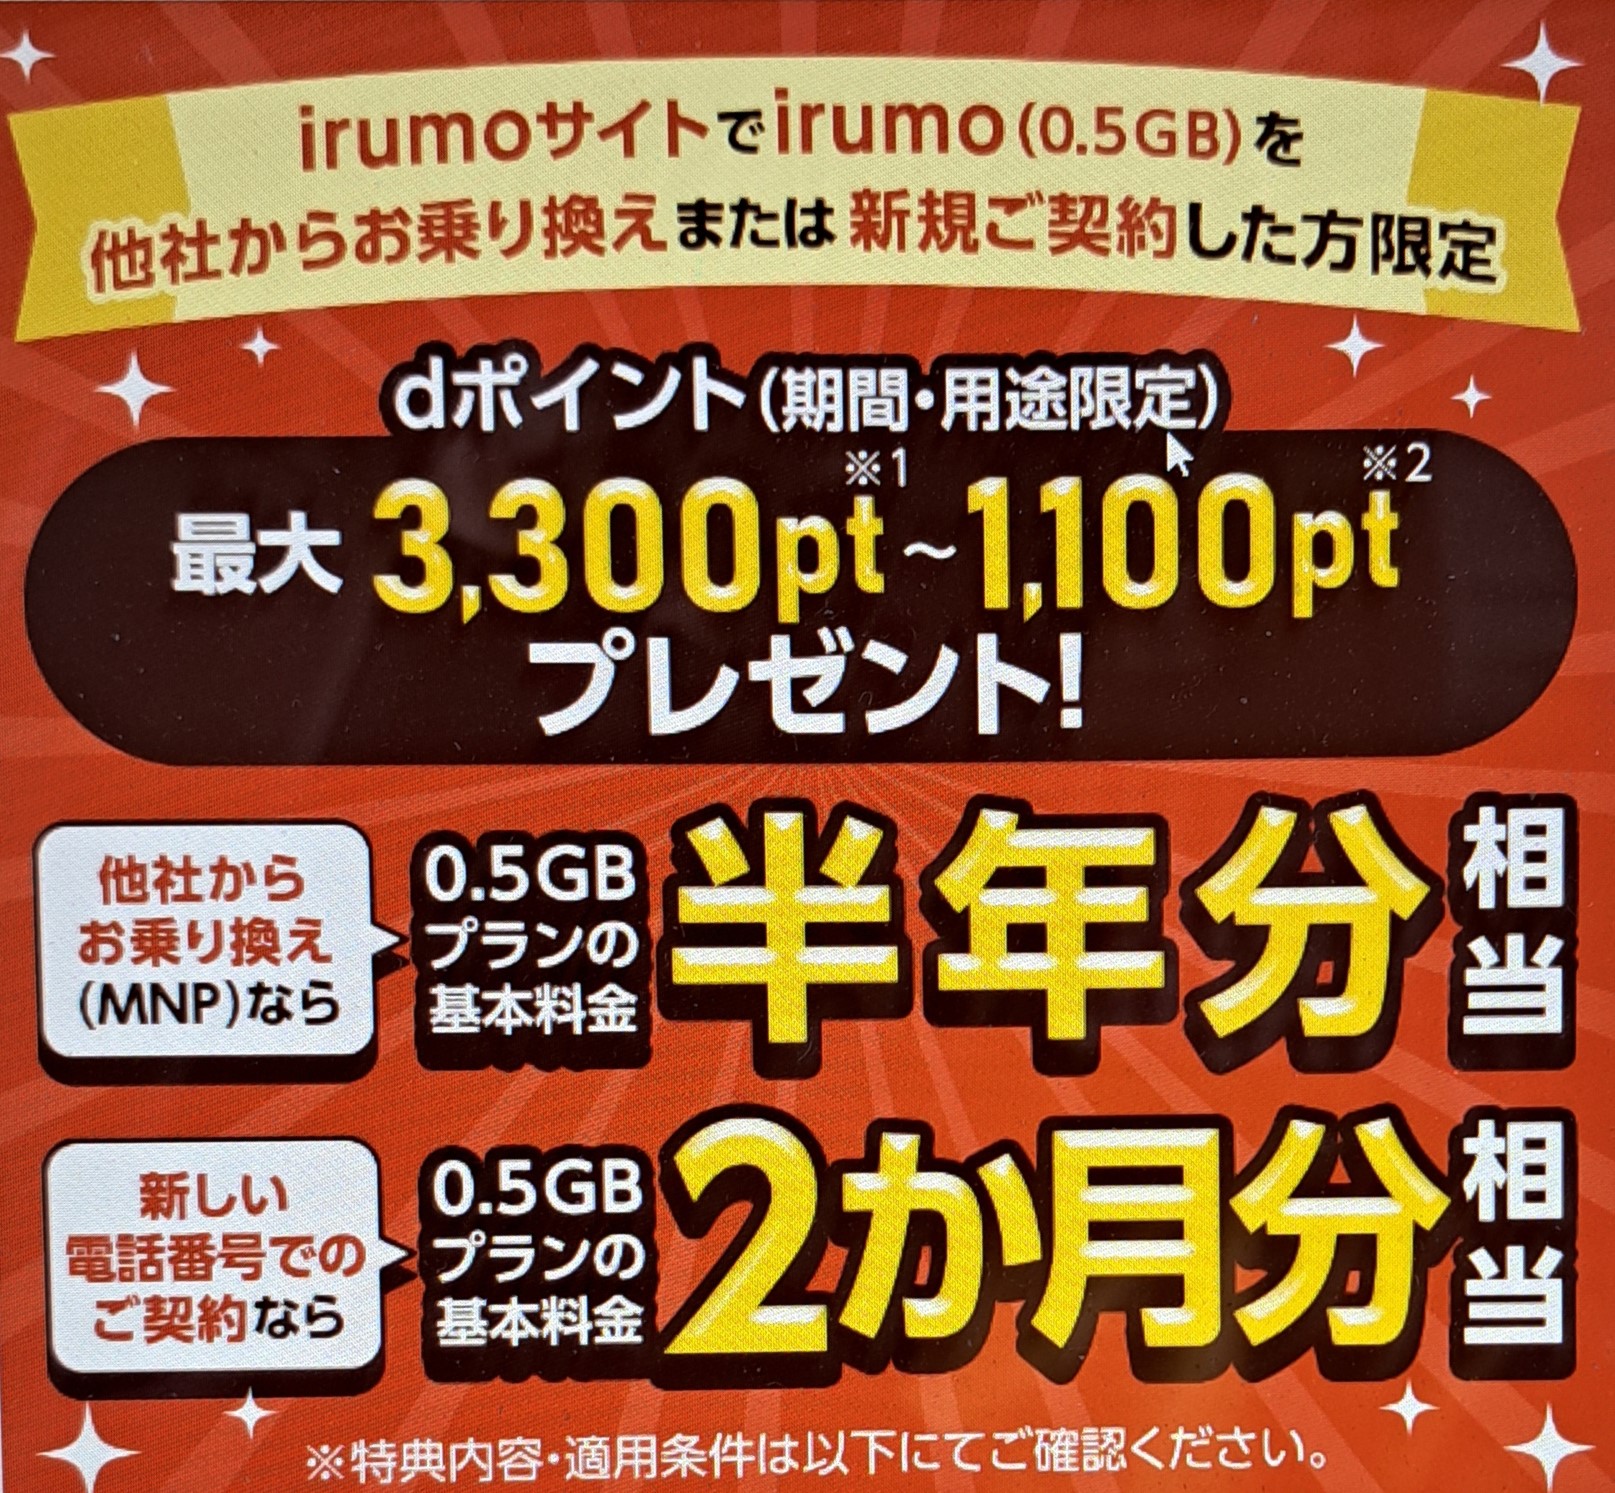 irumo_campaign1